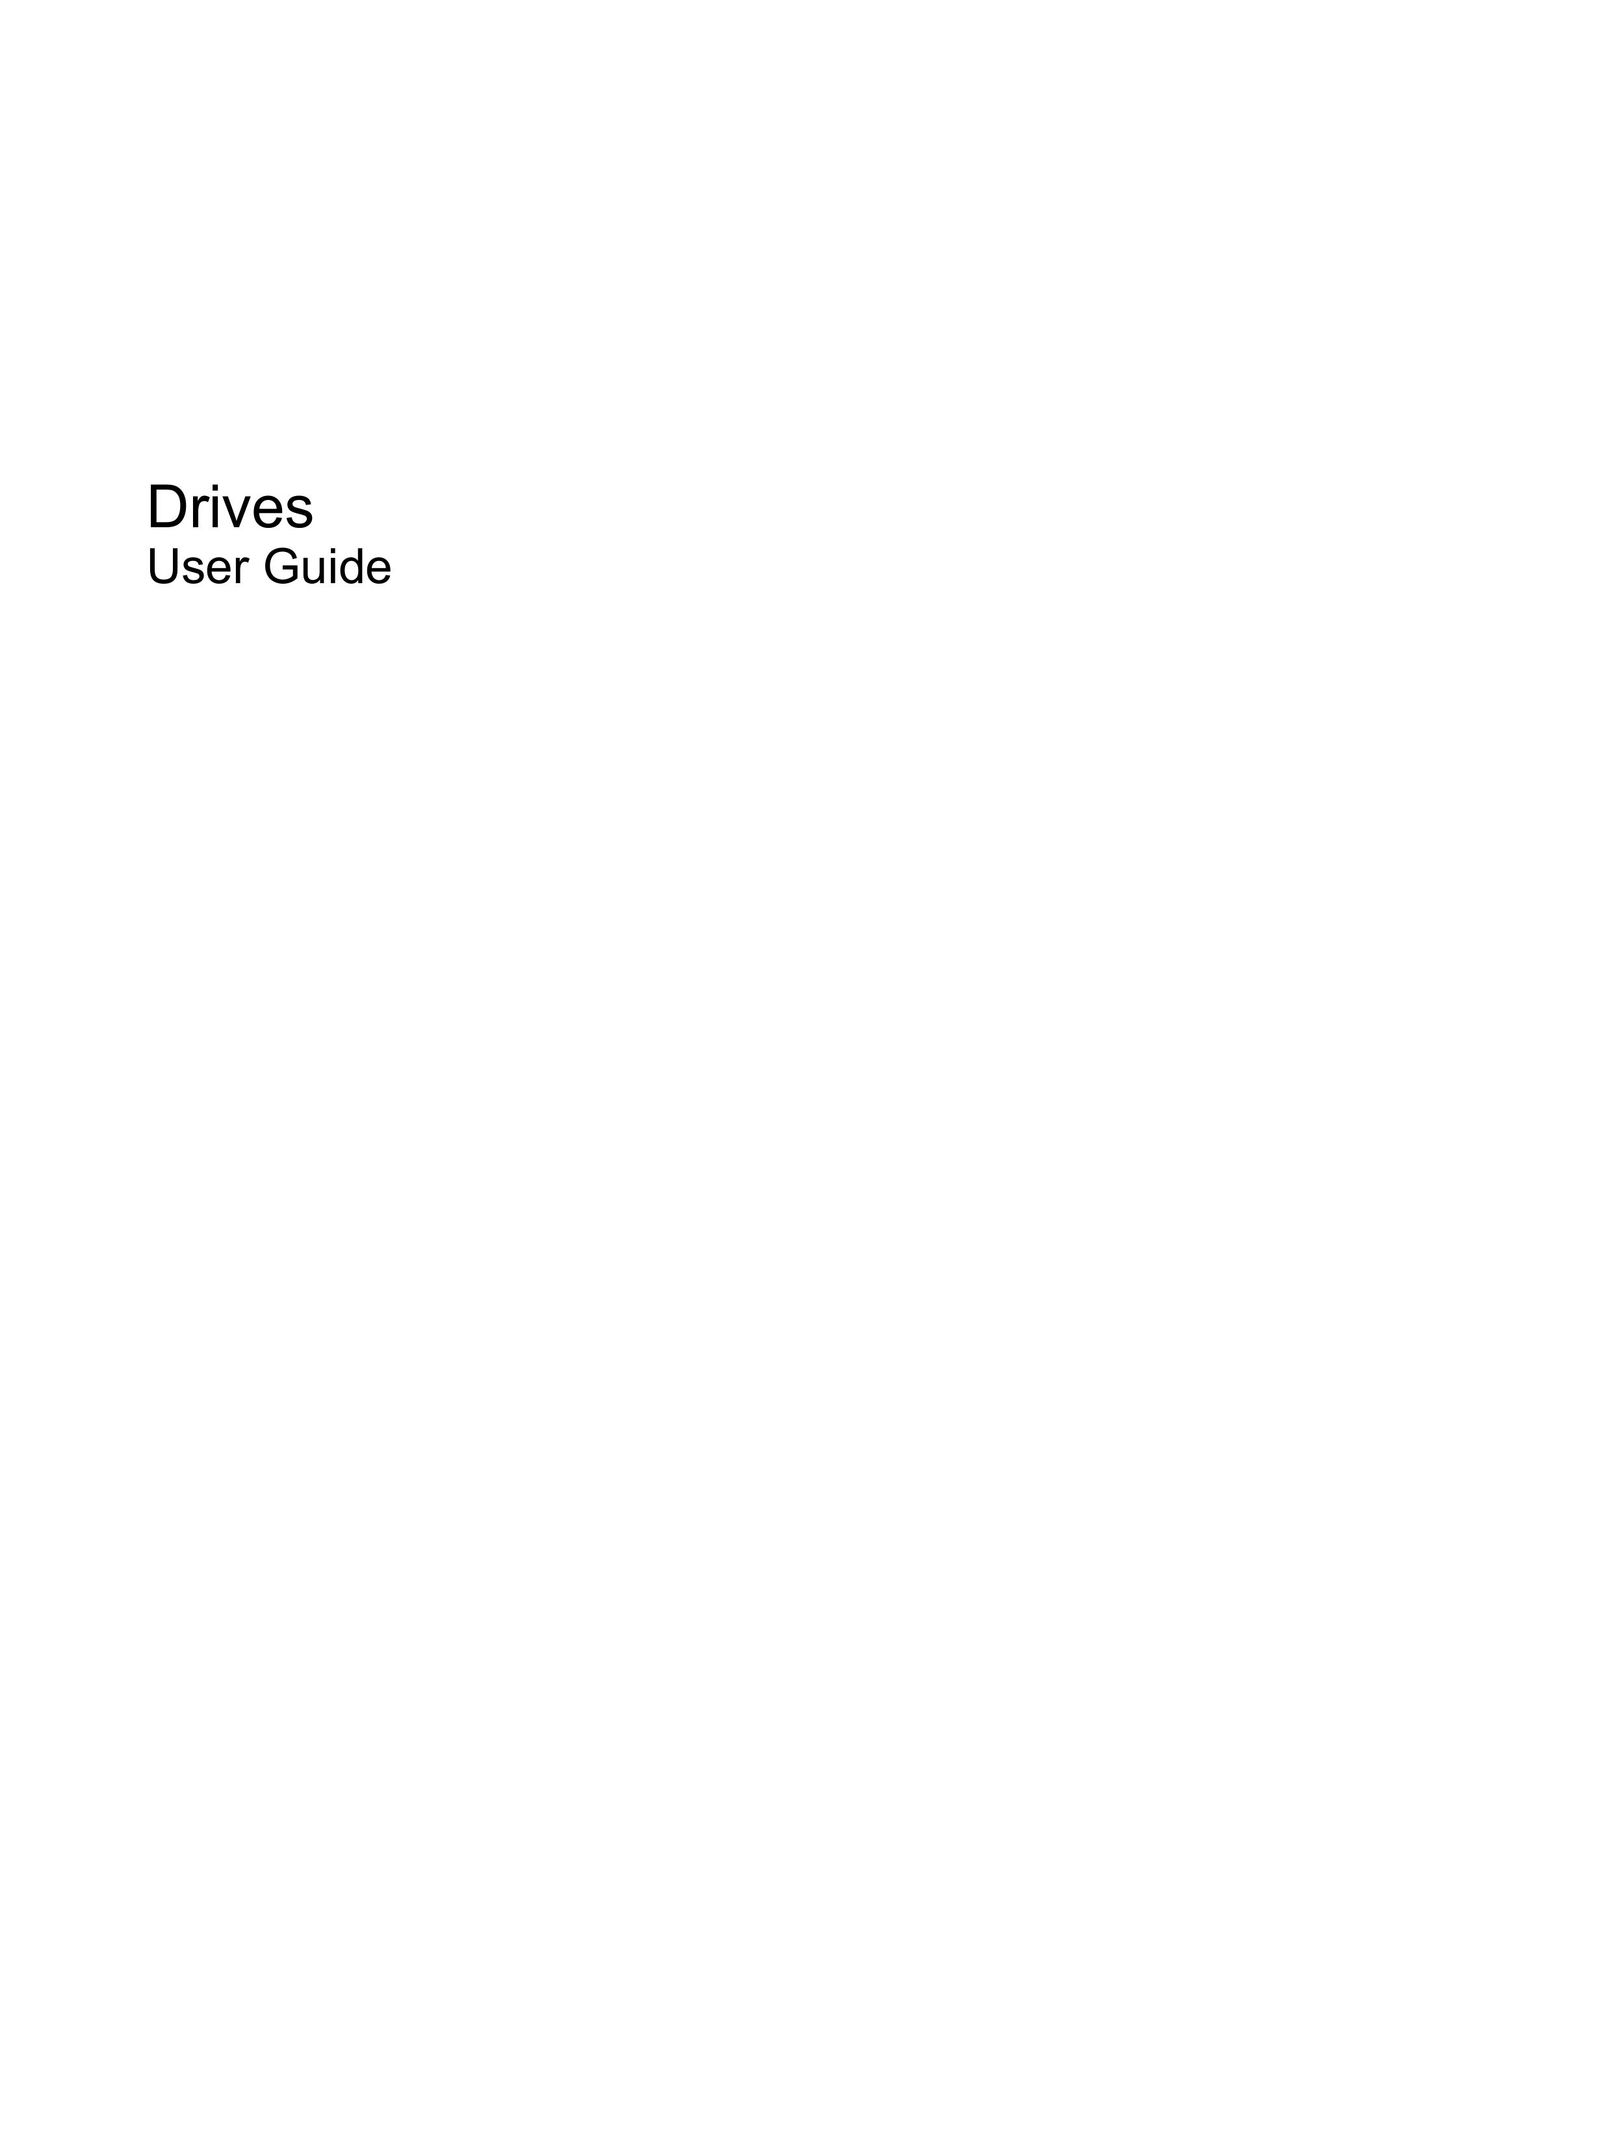 HP (Hewlett-Packard) 519819-001 Welder User Manual